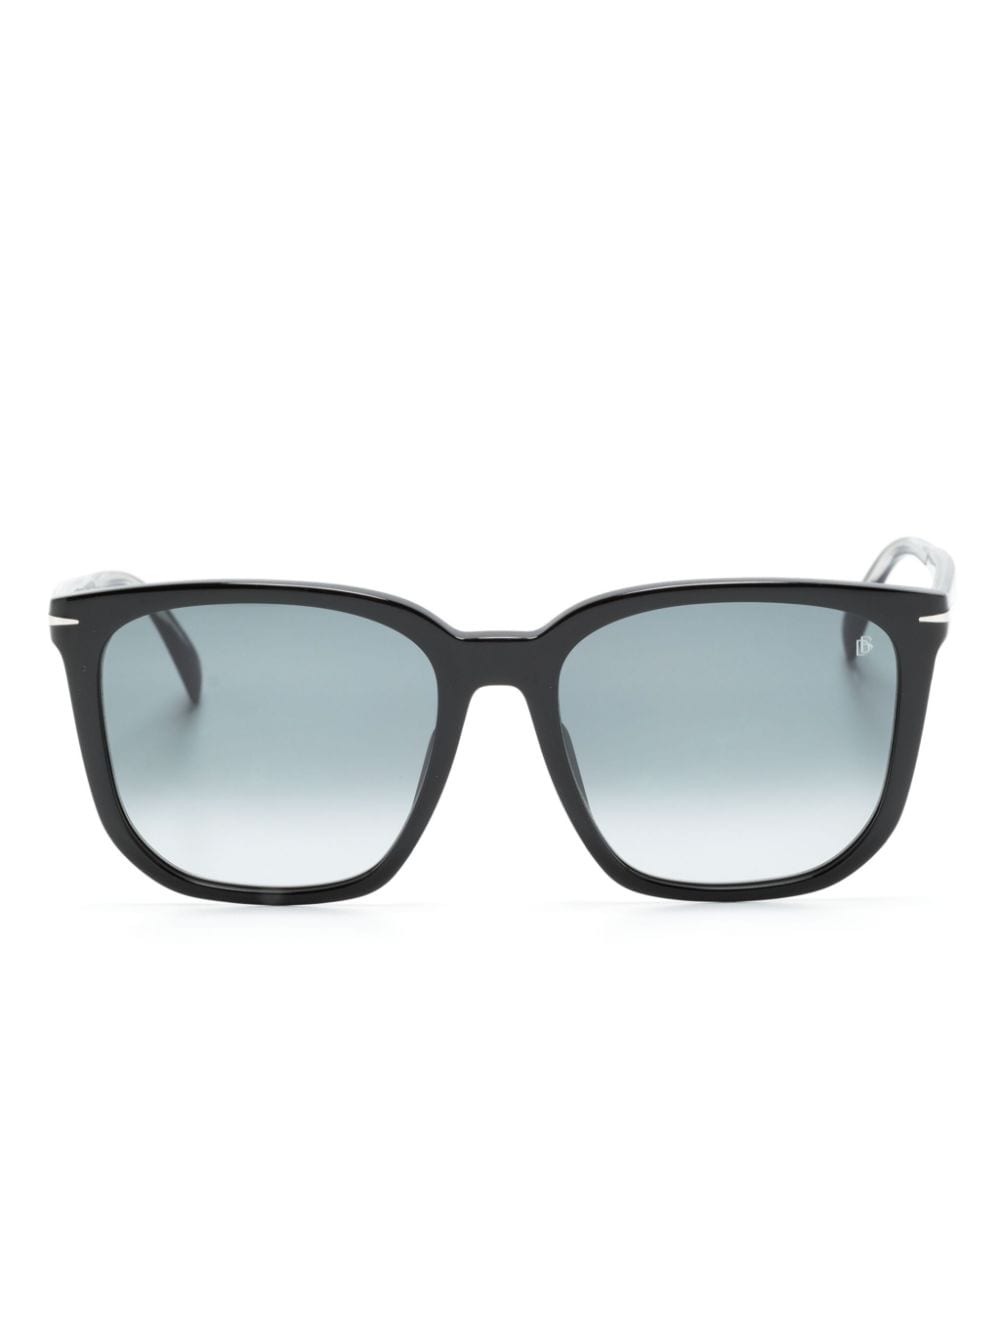 Eyewear by David Beckham oversize-frame sunglasses - Black von Eyewear by David Beckham